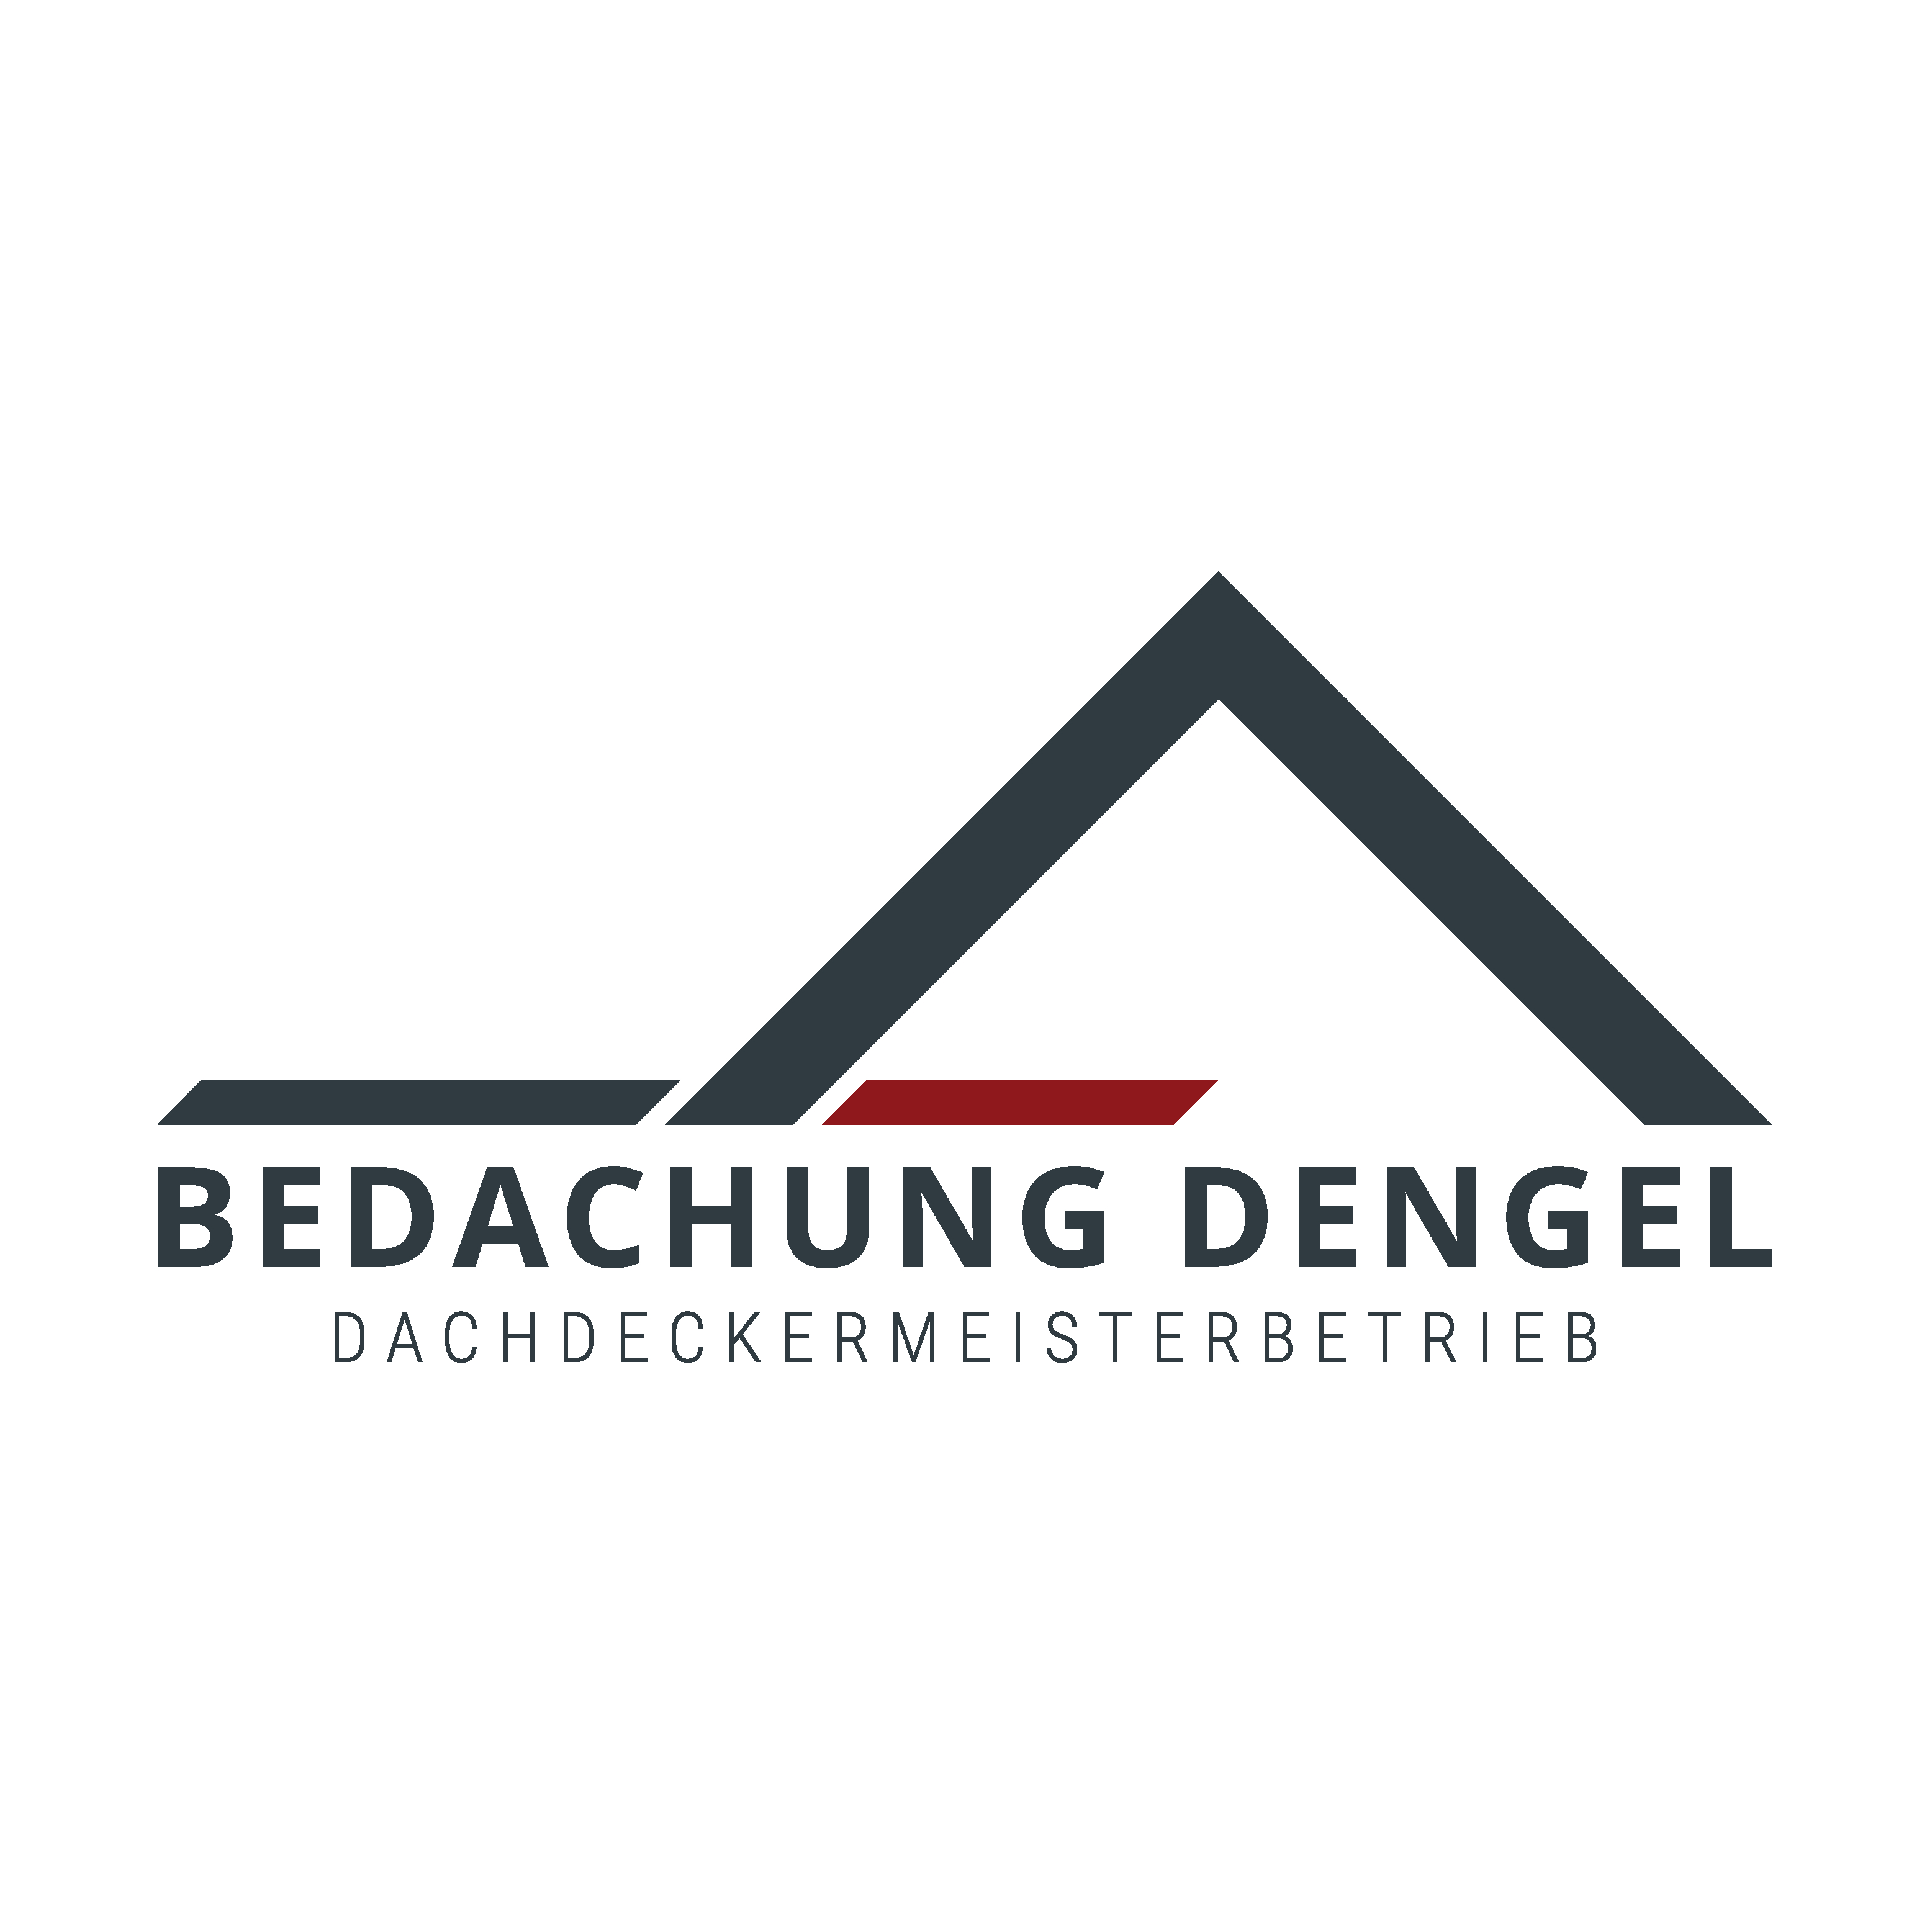 Logo Dachdecker - Bedachungen Dengel